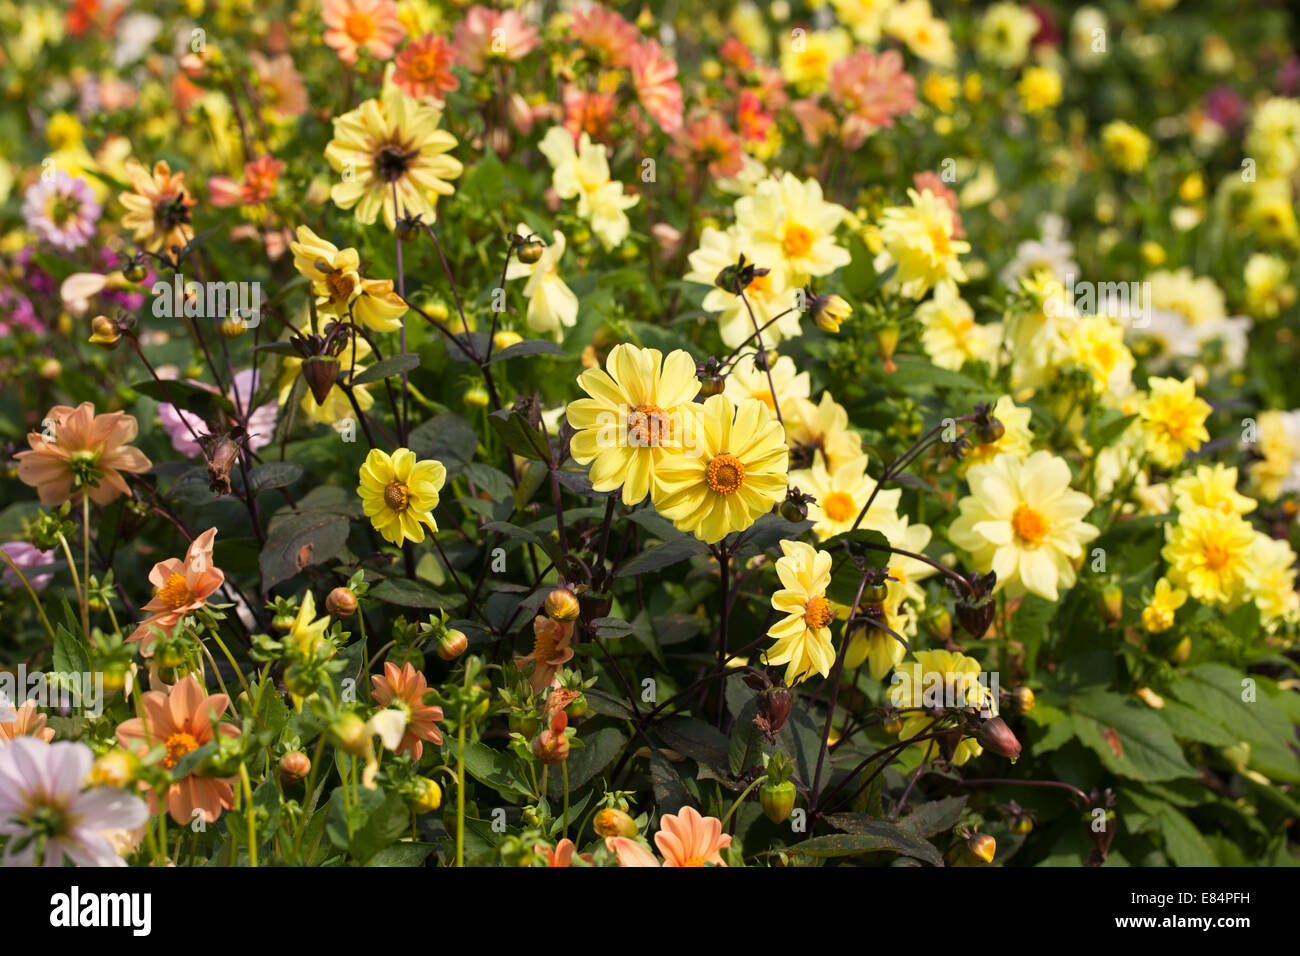 Dahlias flowering in a garden border, England, UK Stock Photo